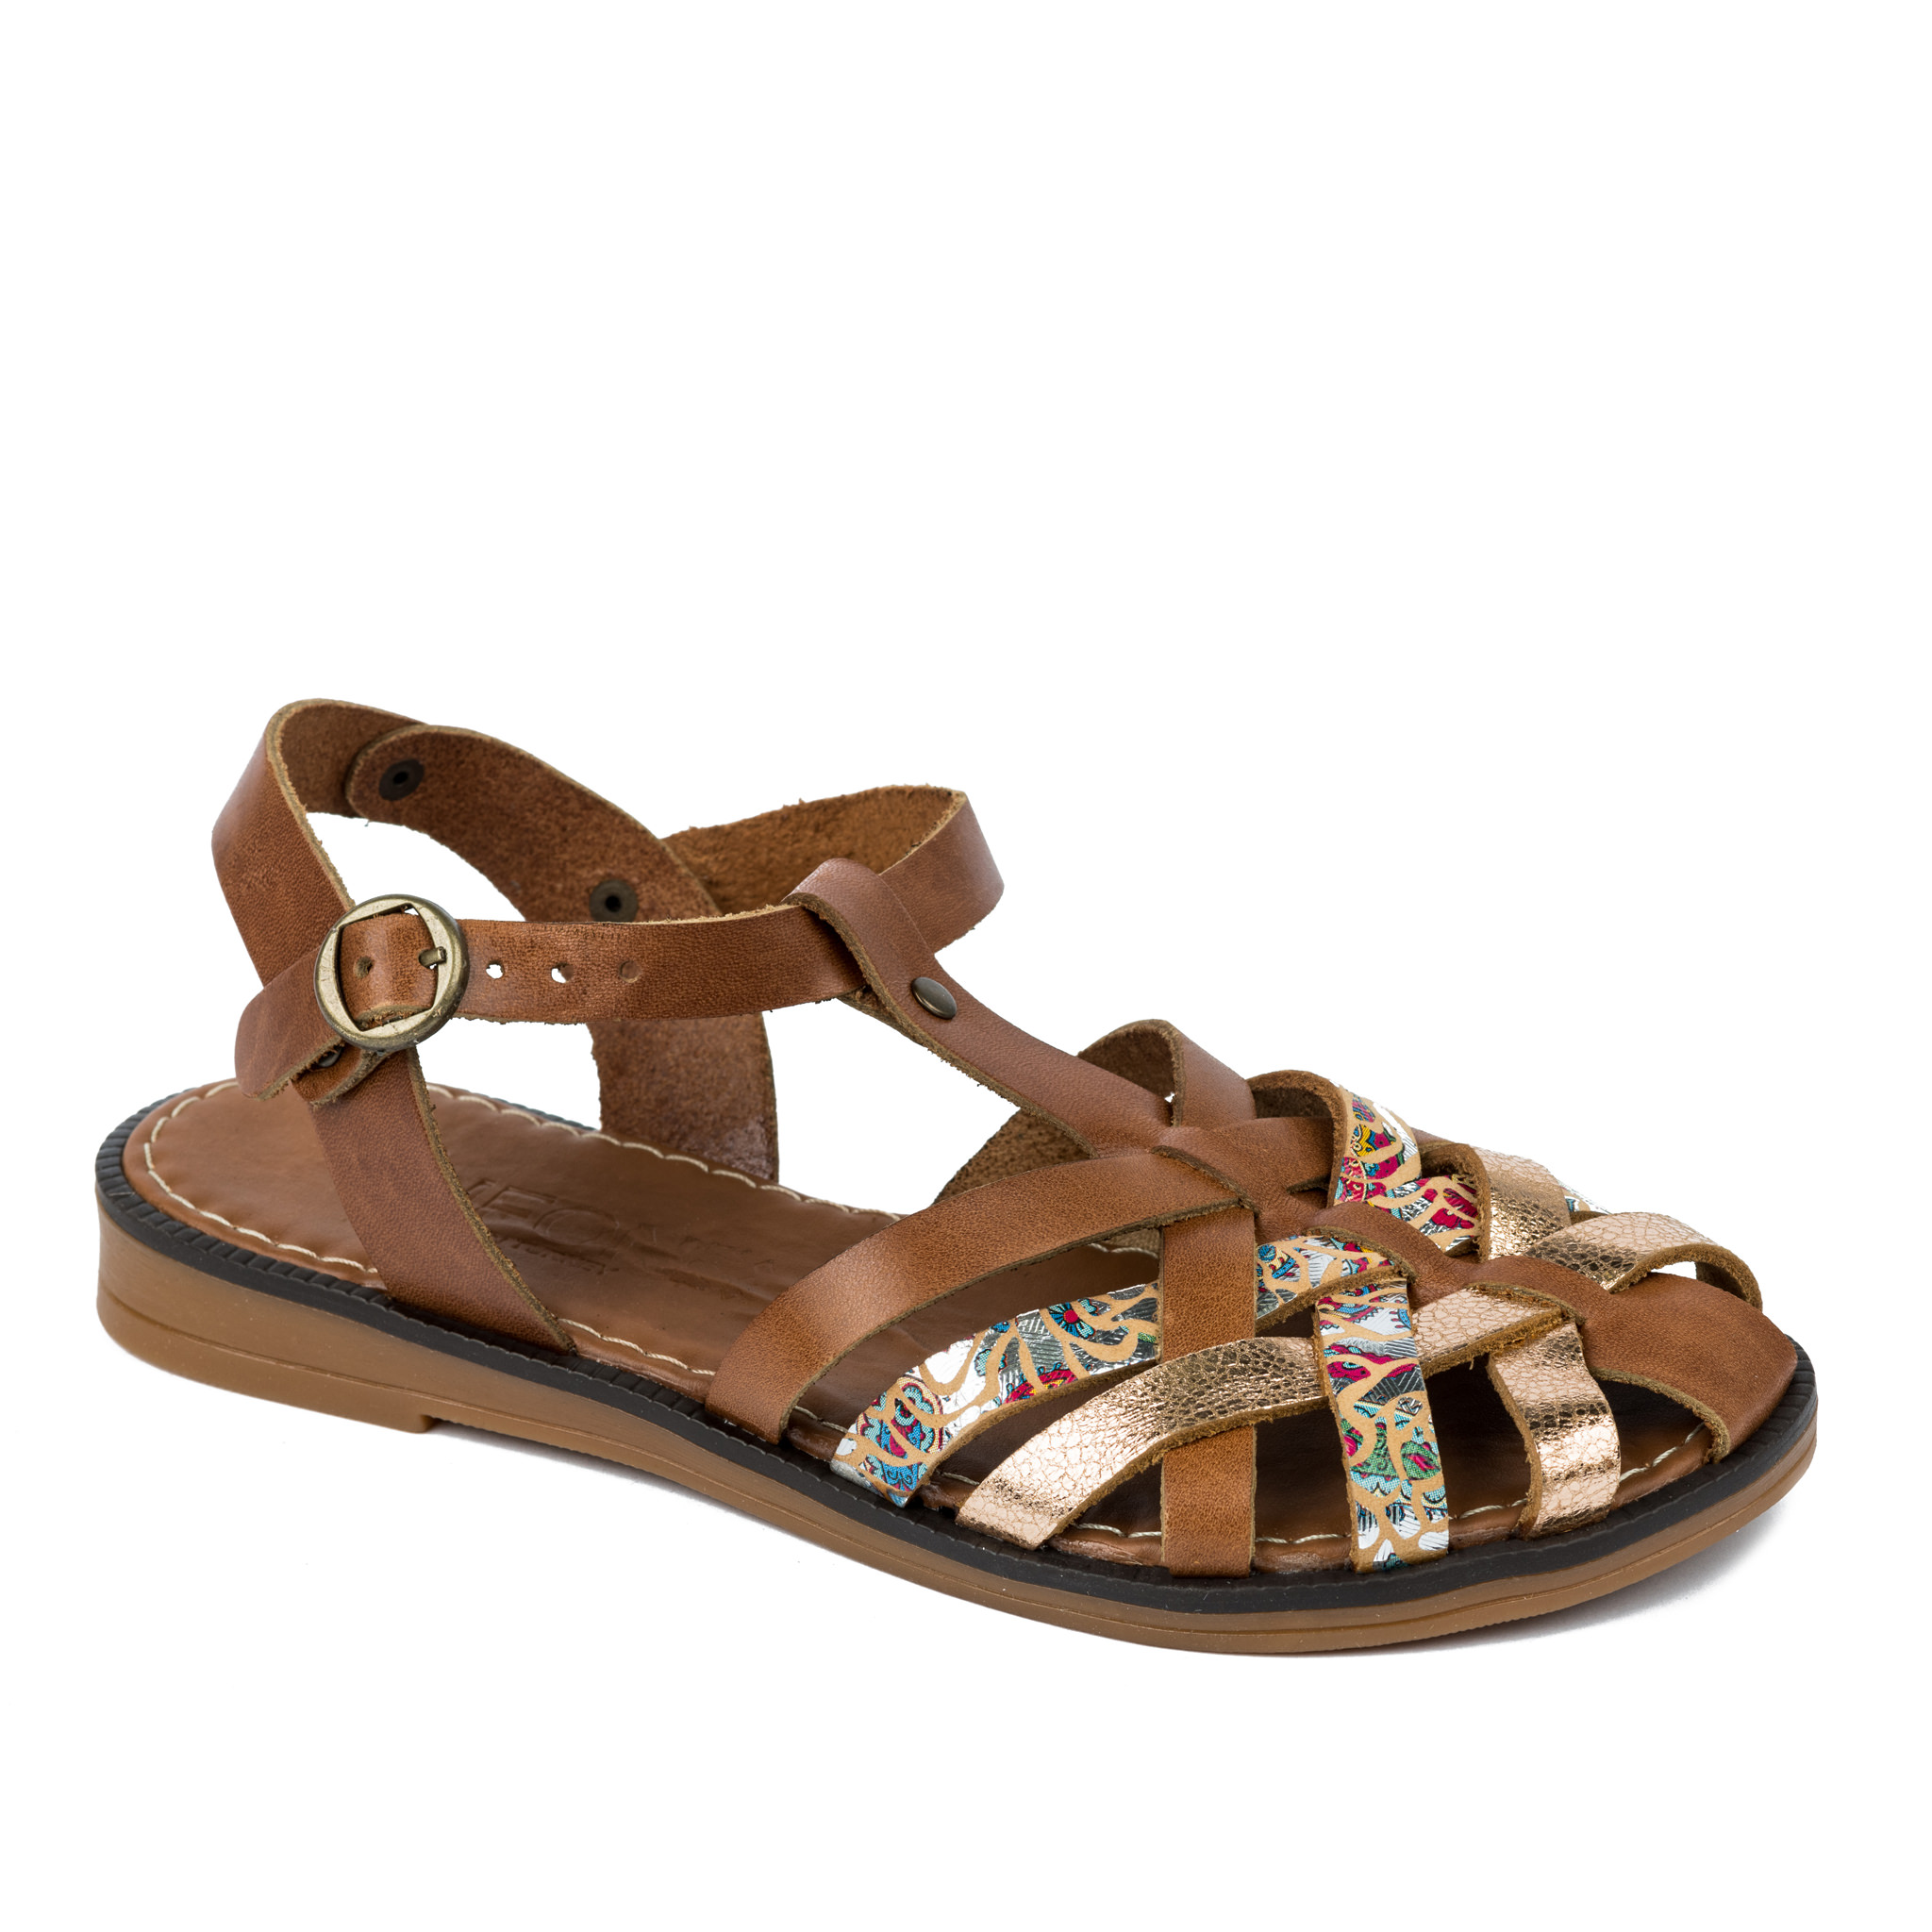 Women sandals A268 - CAMEL